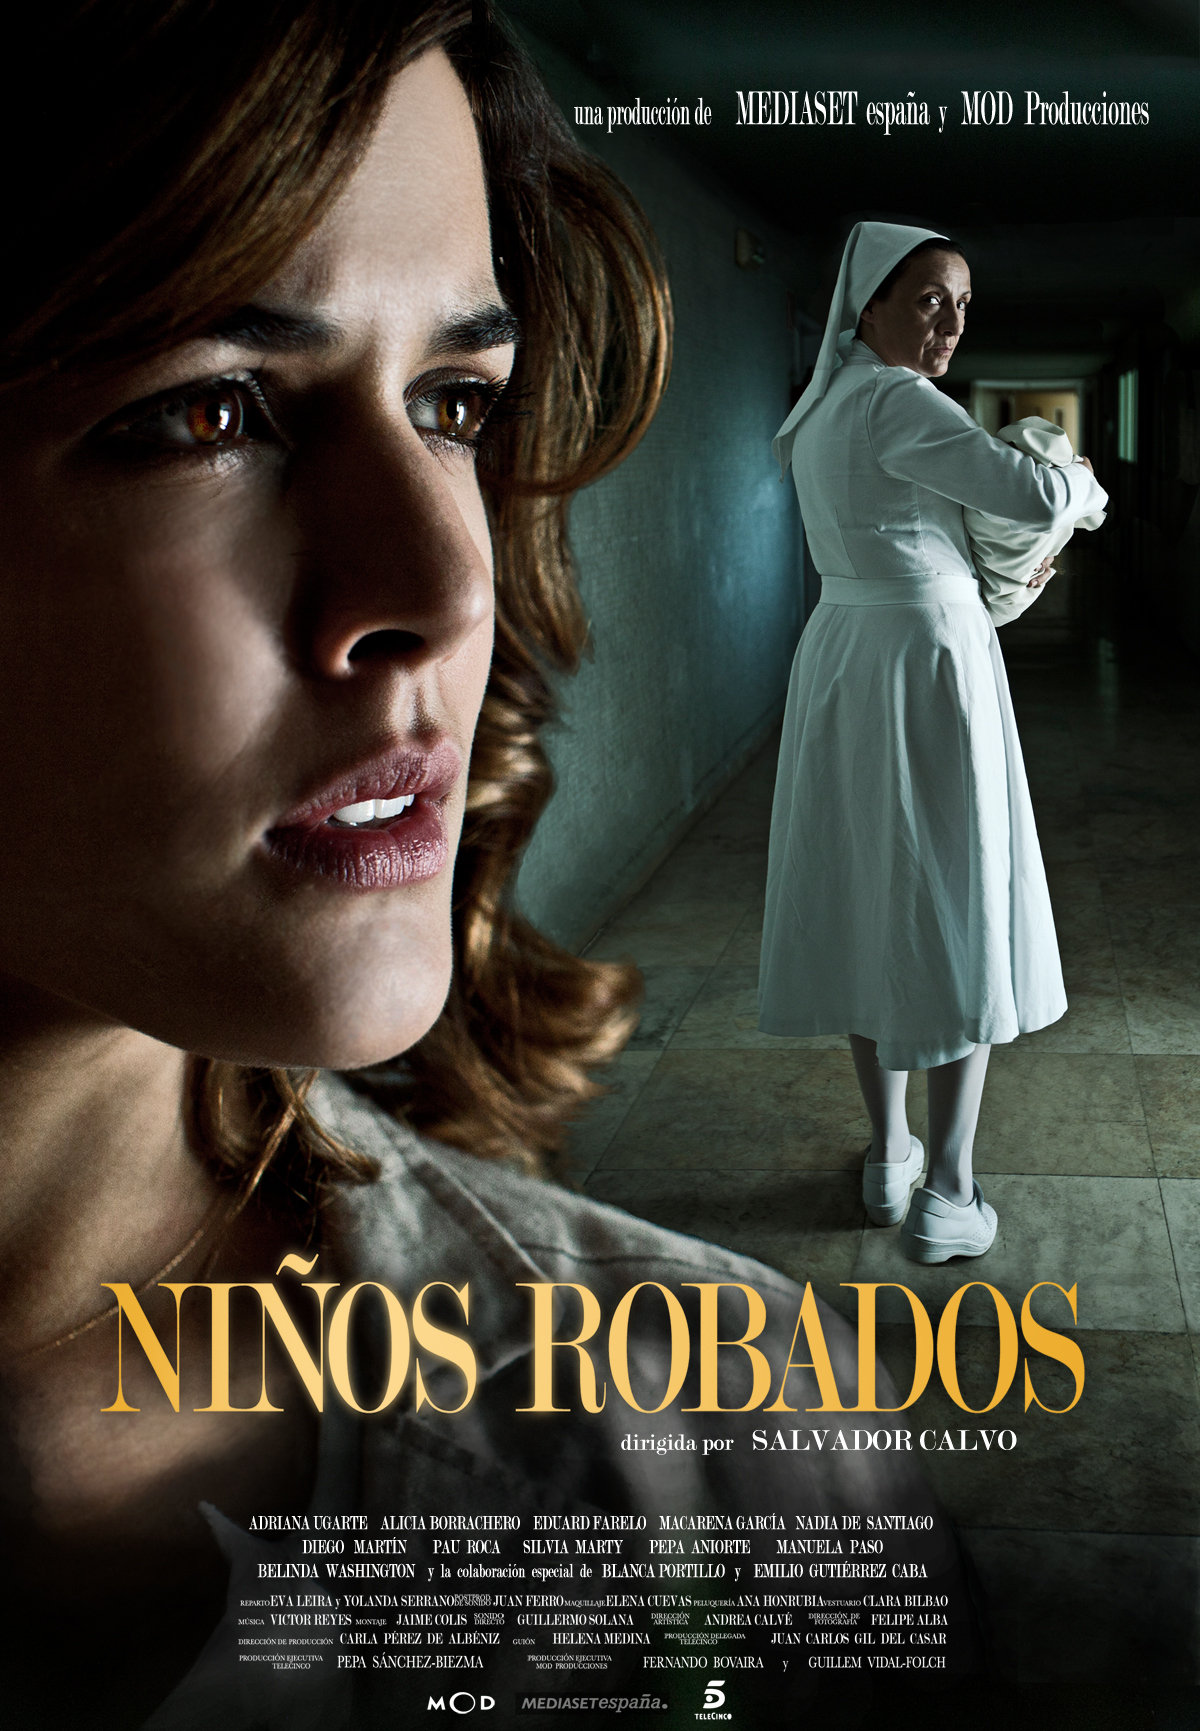 Blanca Portillo and Adriana Ugarte in Niños robados (2013)